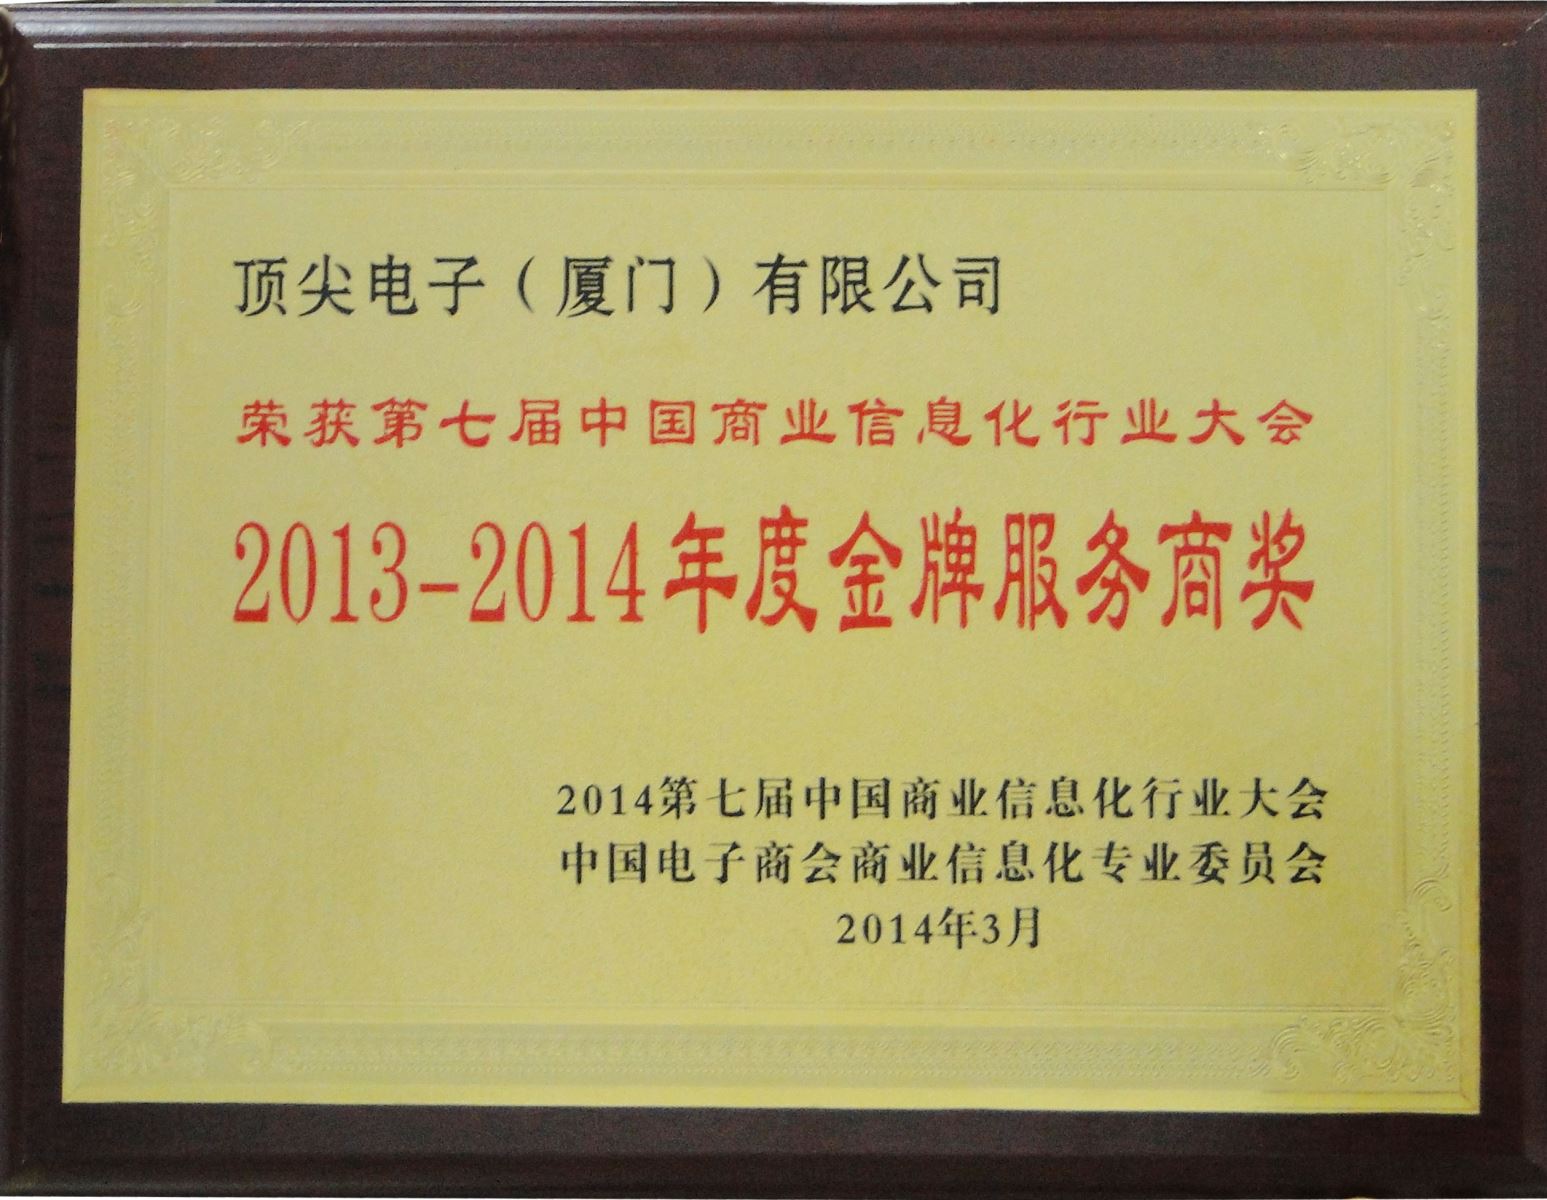 厦门顶尖荣获2014年中国商业信息化行业大会“年度金牌服务奖”